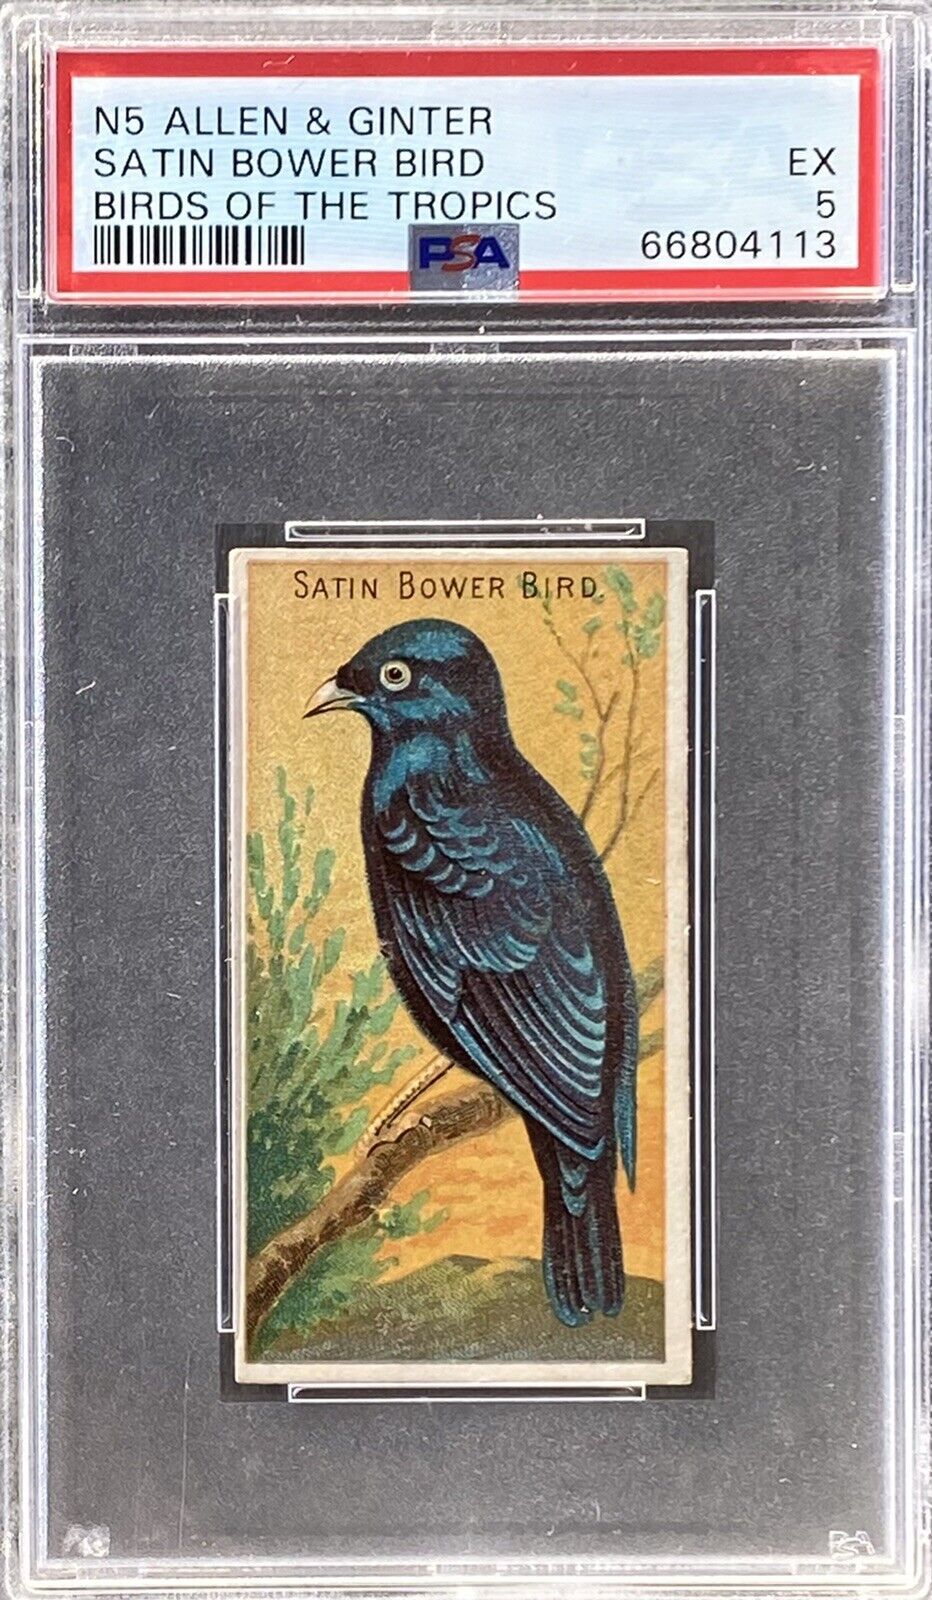 1889 N5 Allen & Ginter Birds Of The Tropics SATIN BOWER BIRD PSA 5 EX